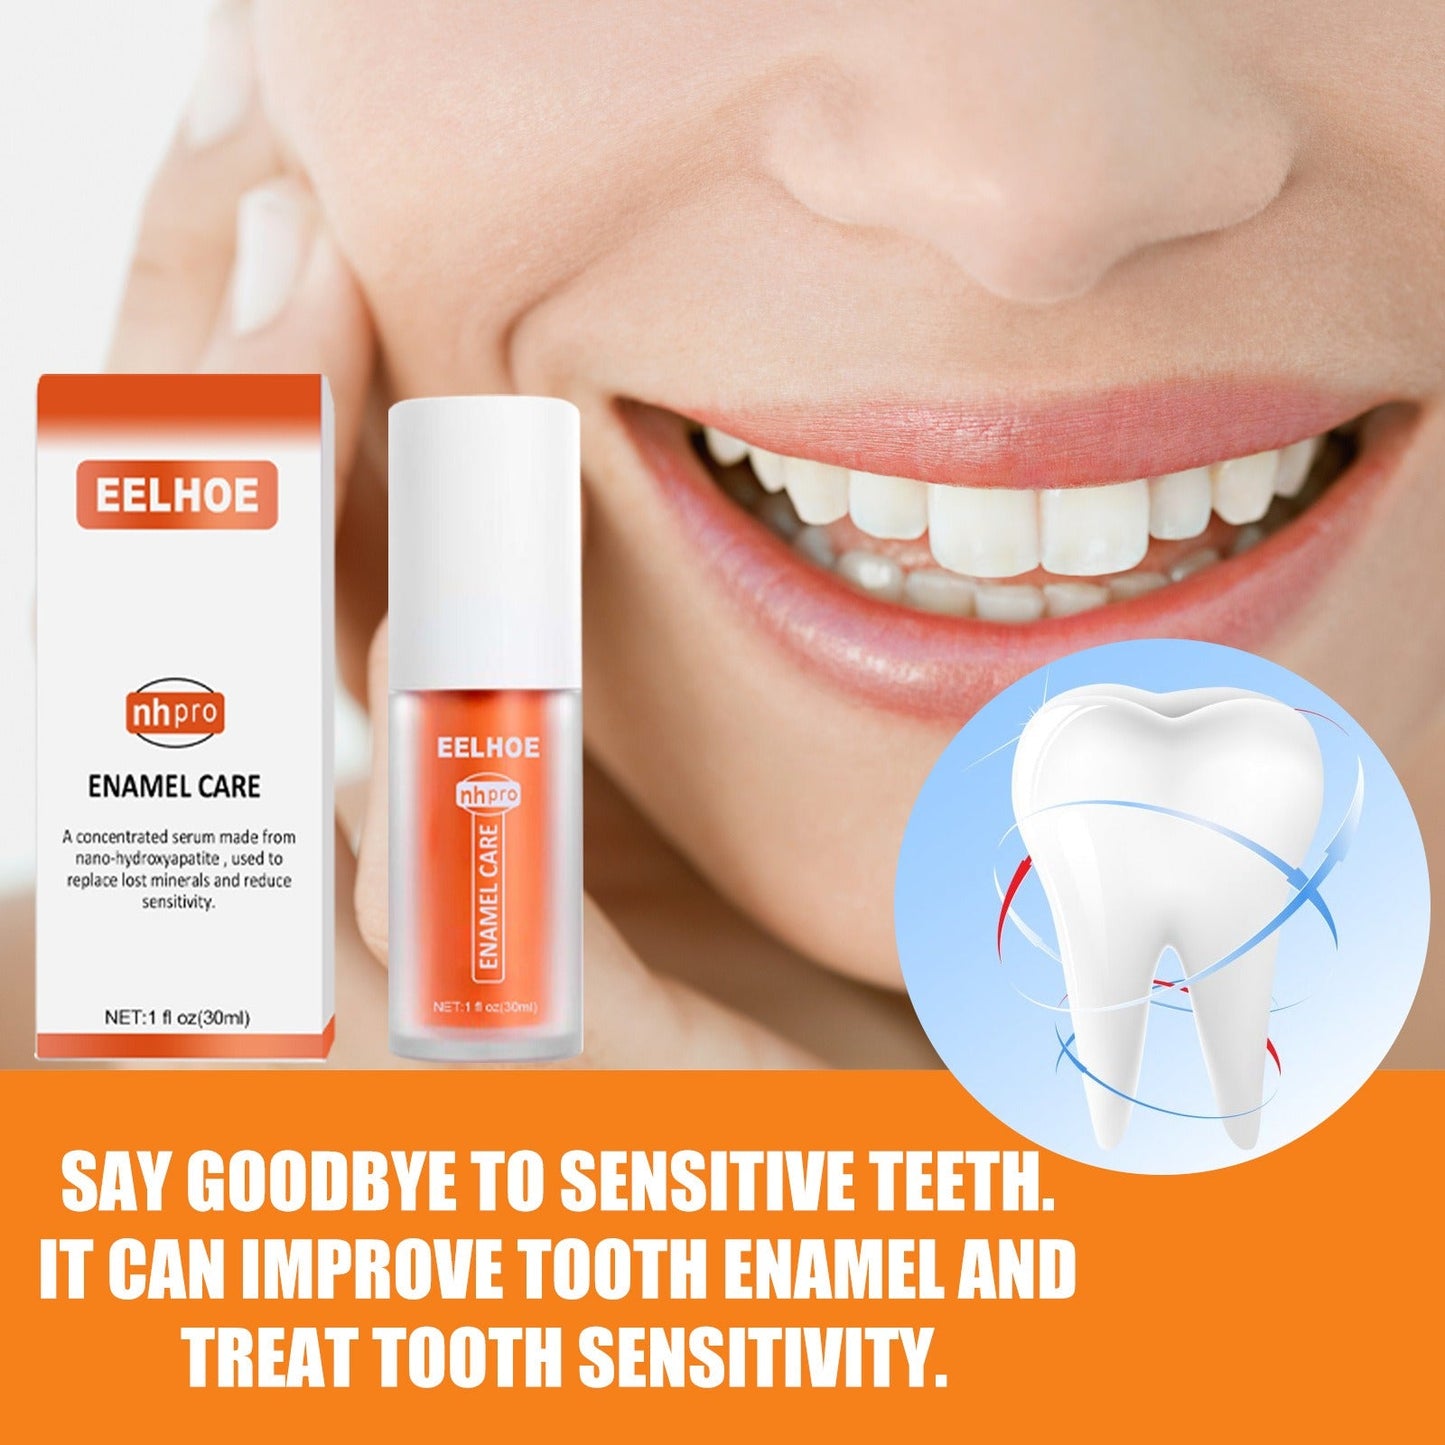 RadiantSmile™️ Teeth Colour Corrector Serum